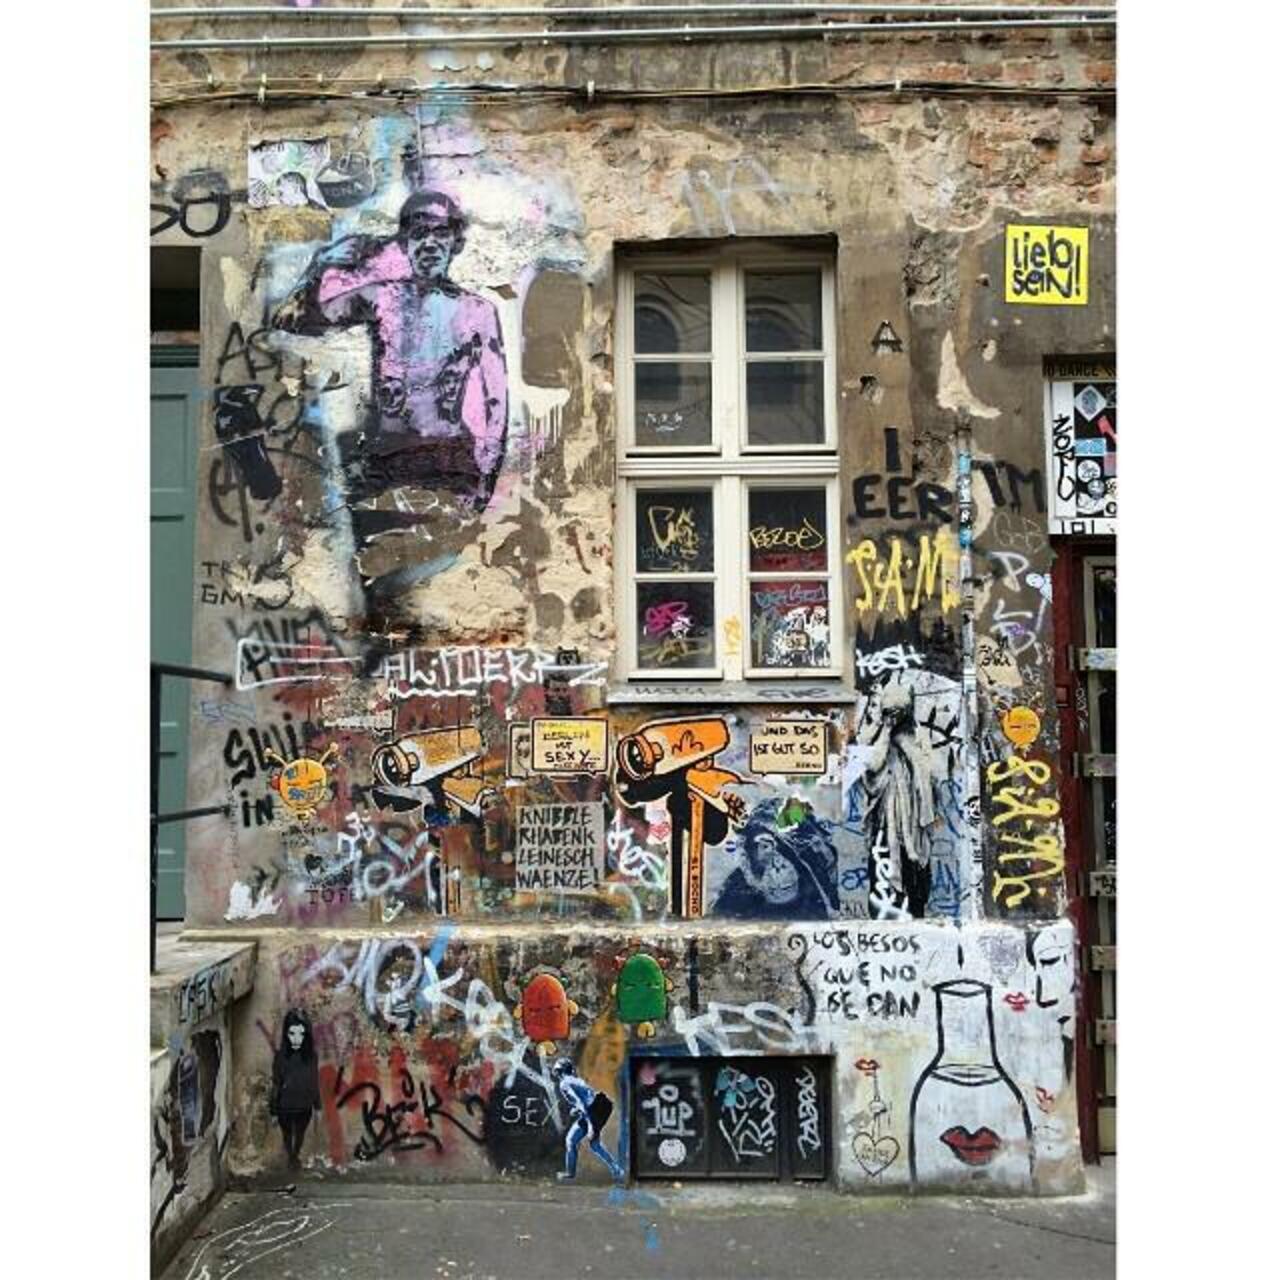 #Berlin #Allemagne #streetart #street #art #urbanart #urbantag #graffiti #streetartberlin by becombegeek http://t.co/0UM4tWWGxq